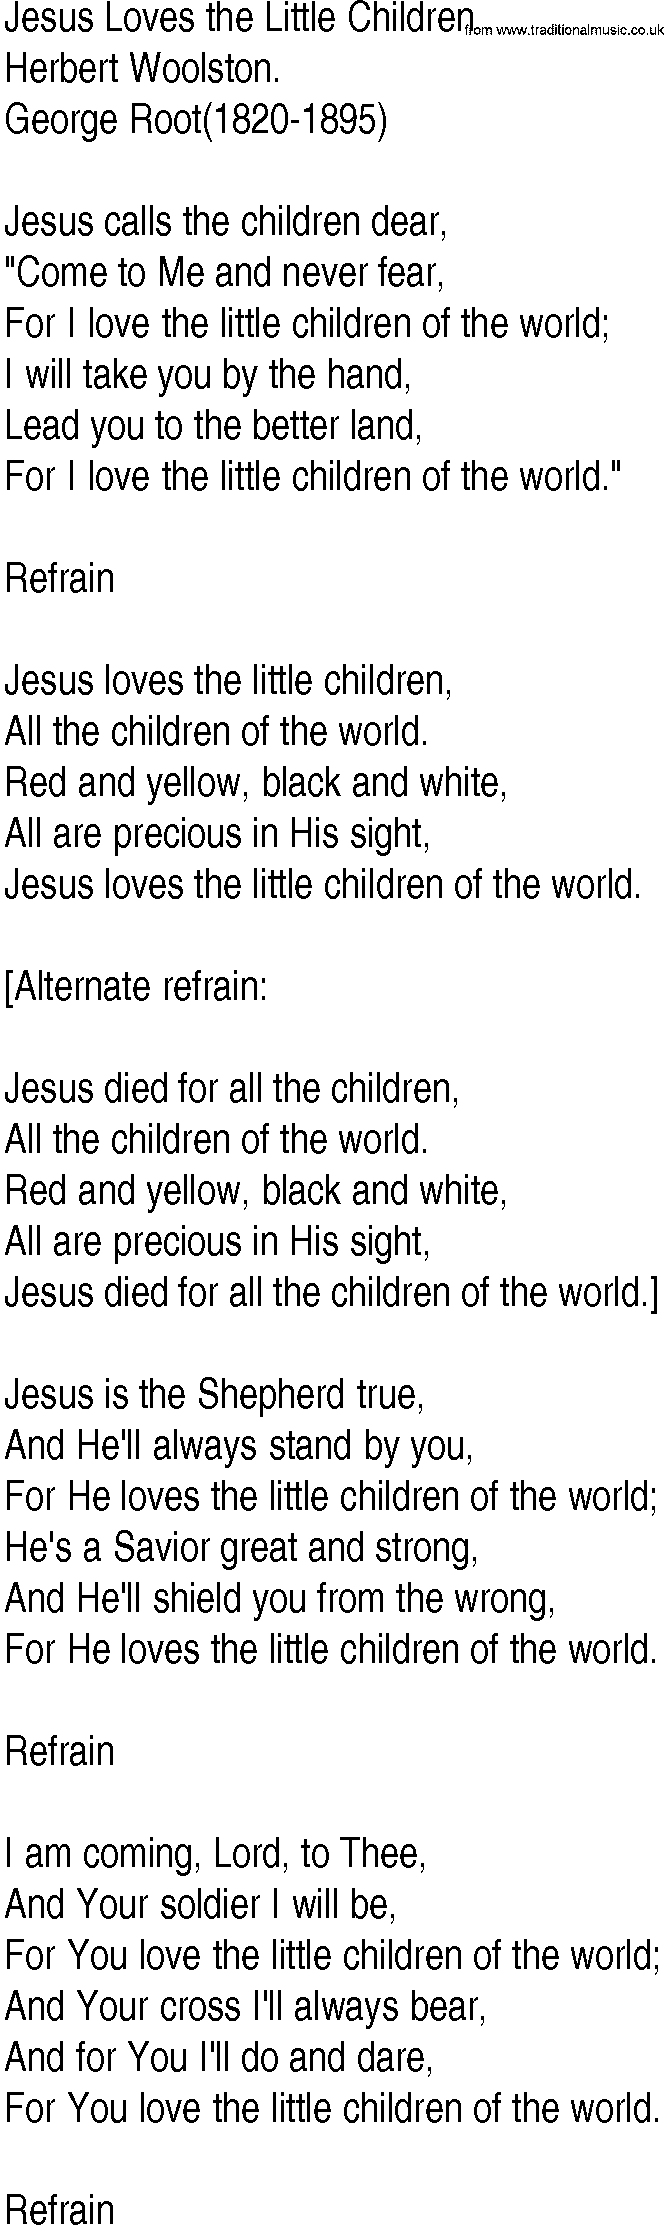 Hymn and Gospel Song: Jesus Loves the Little Children by Herbert Woolston lyrics